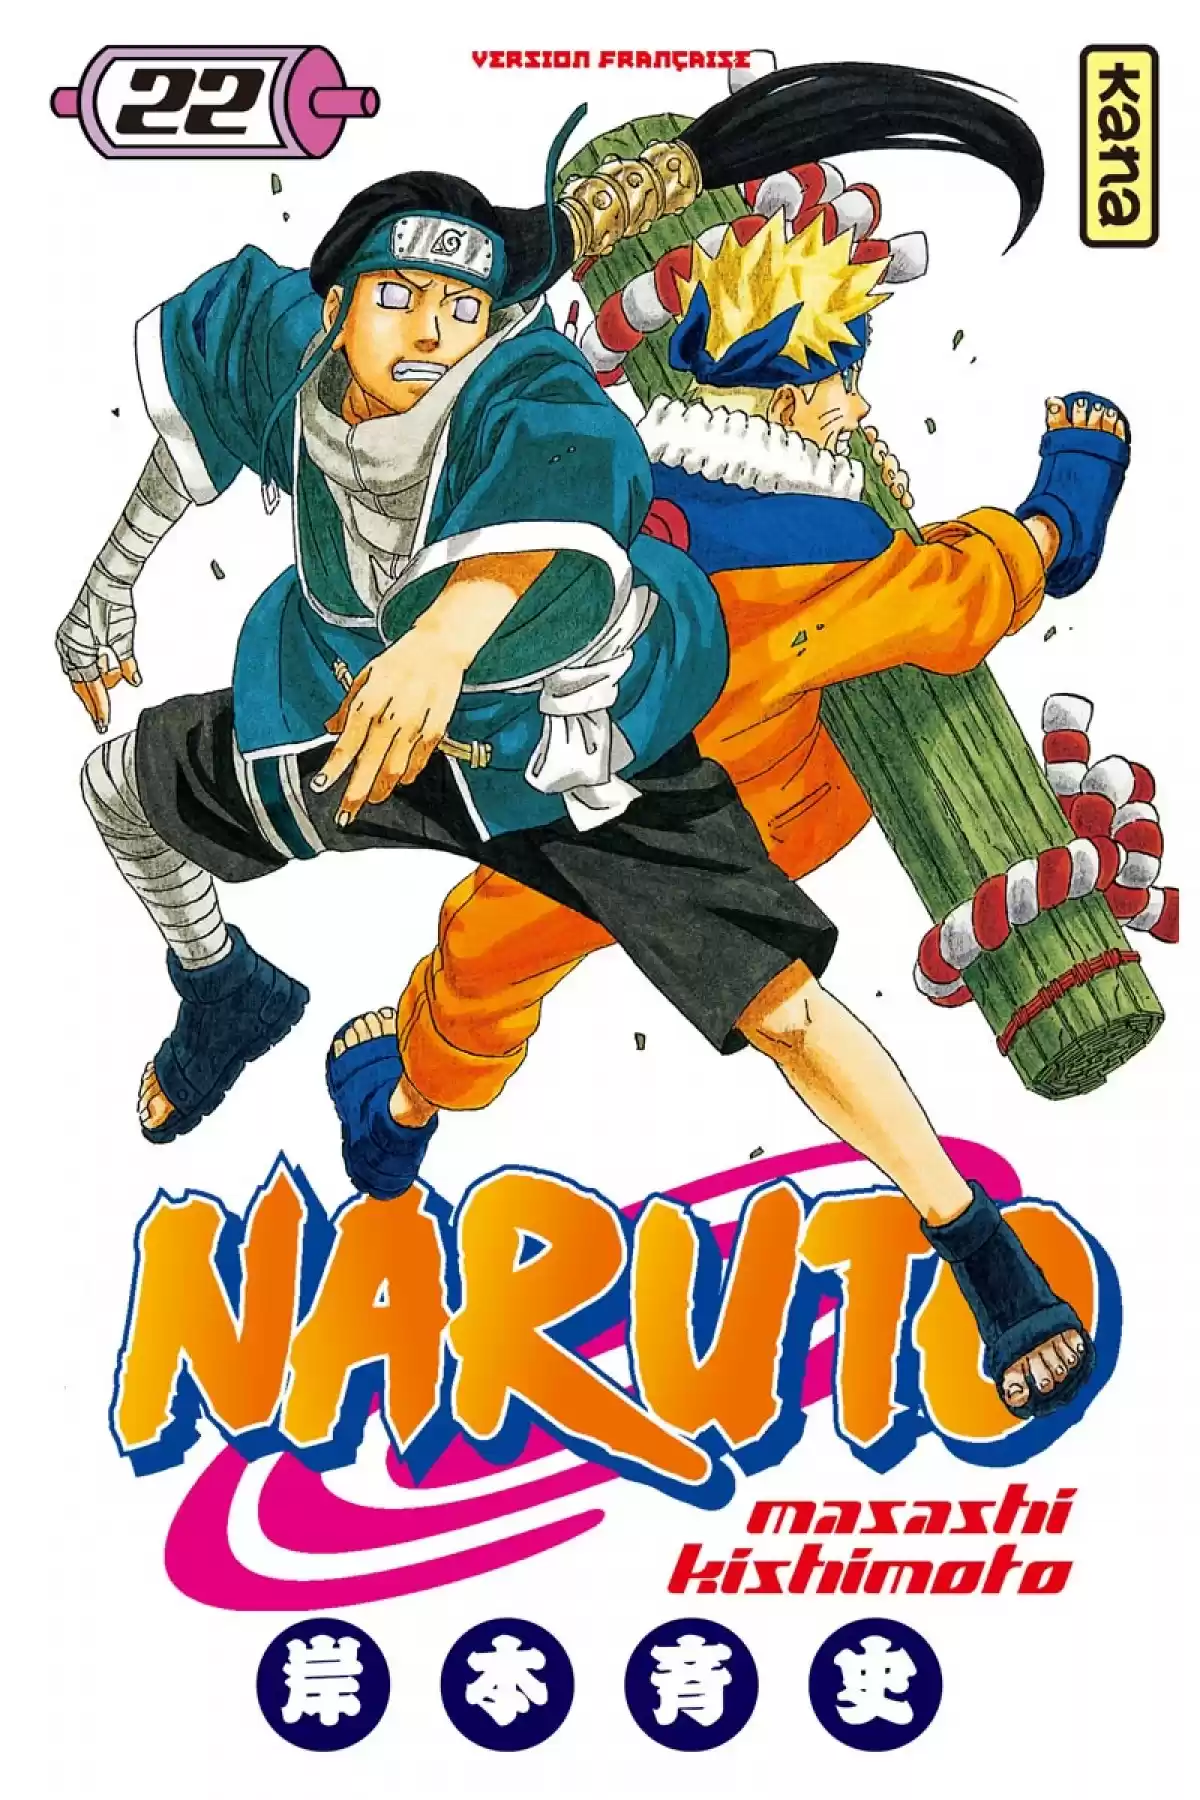 Naruto Volume 22 page 1